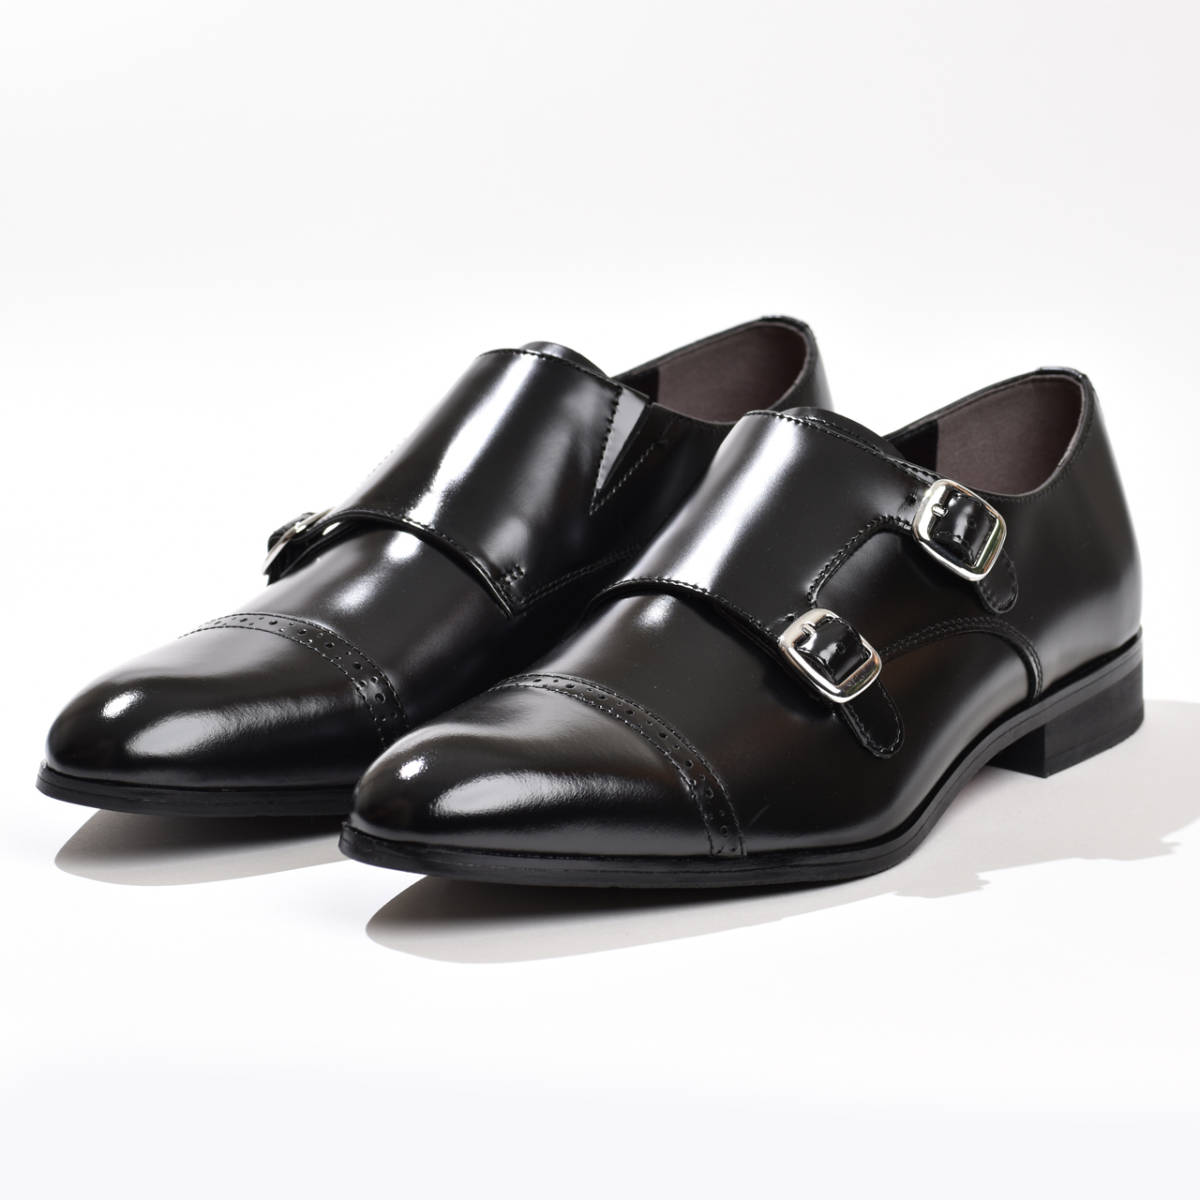 革靴 ビジネスシューズ 26.0cm メンズ 本革 日本製 モンクストラップ ブラック 黒 新品 紳士靴